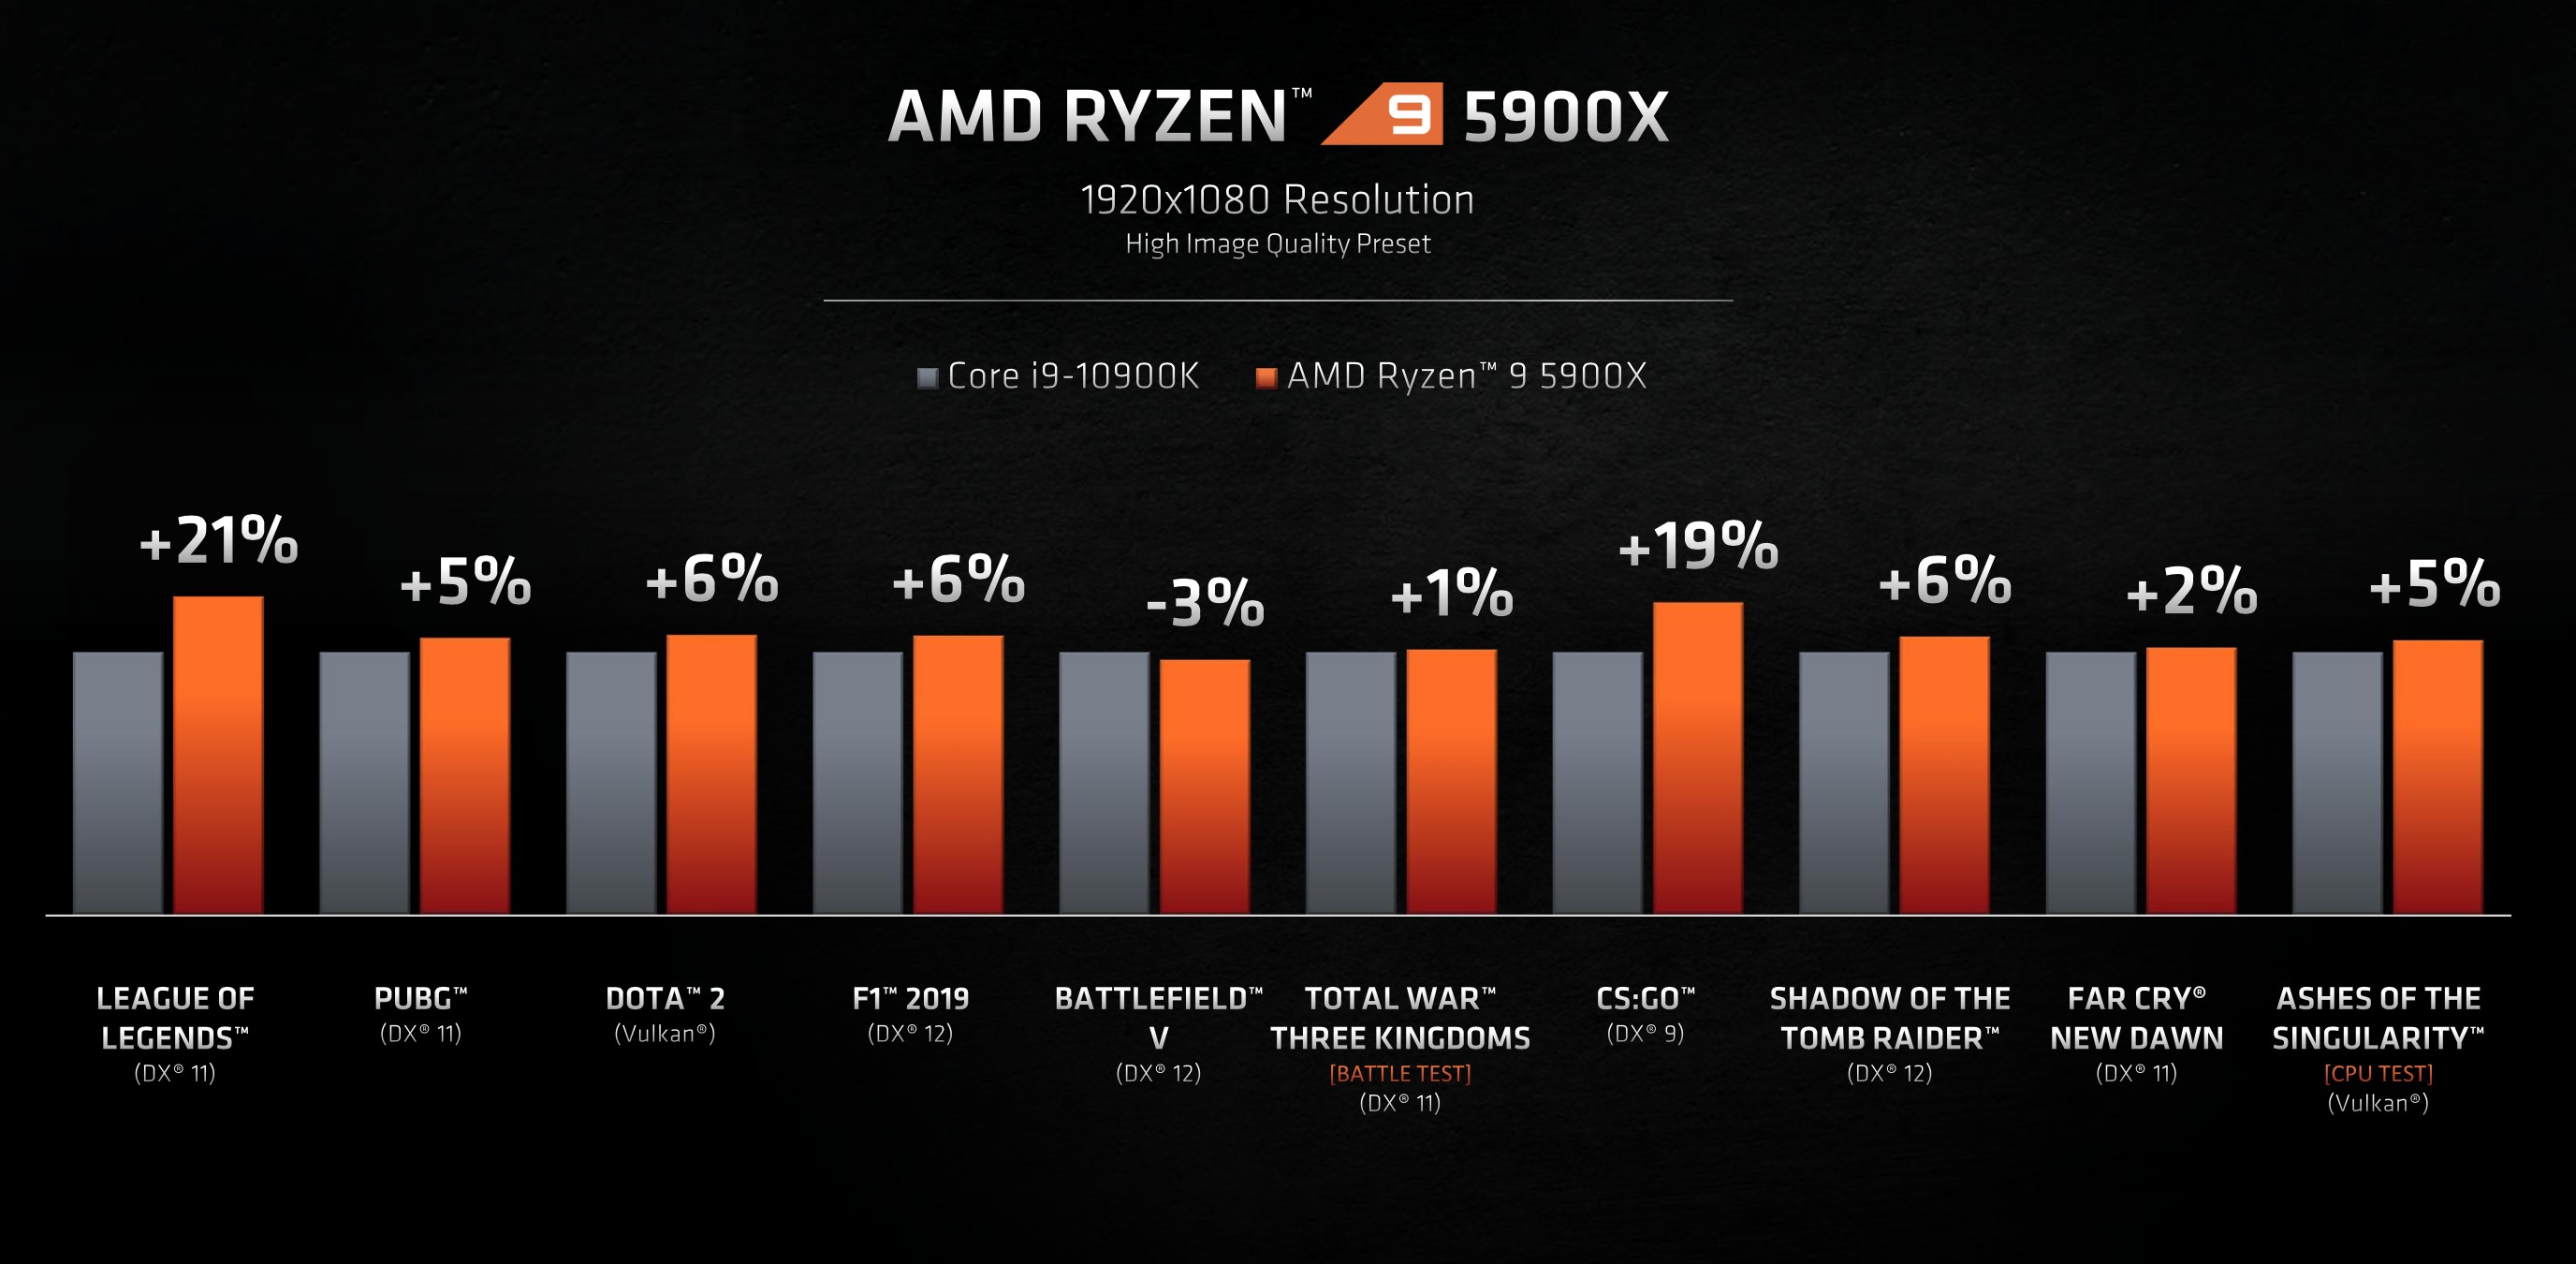 AMD najavio Ryzen 5000 seriju procesora, tvrde da imaju najbolje procesore  za gaming | HCL.hr